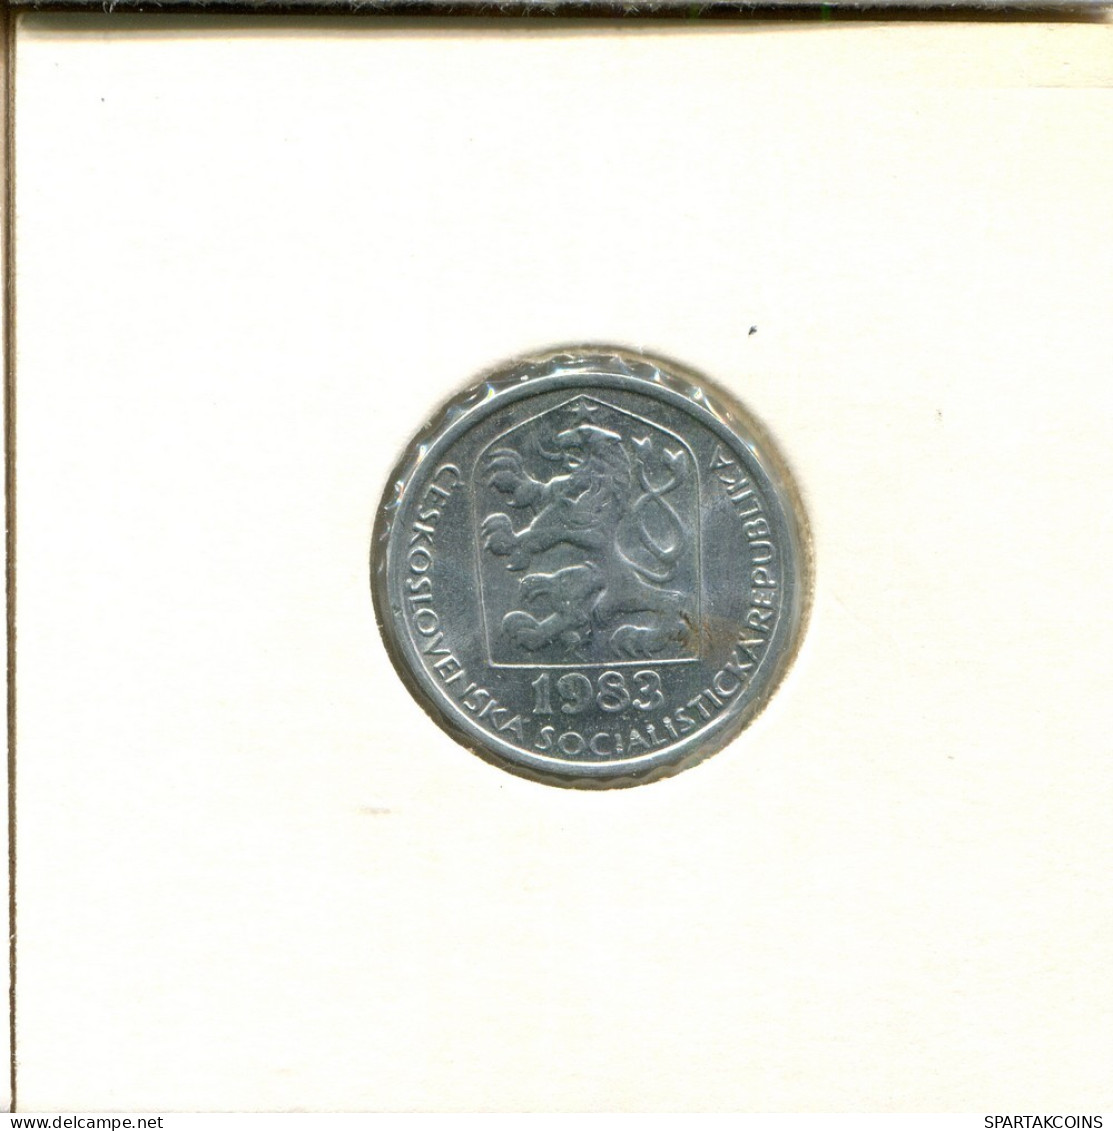 10 HALERU 1983 CHECOSLOVAQUIA CZECHOESLOVAQUIA SLOVAKIA Moneda #AS939.E.A - Cecoslovacchia